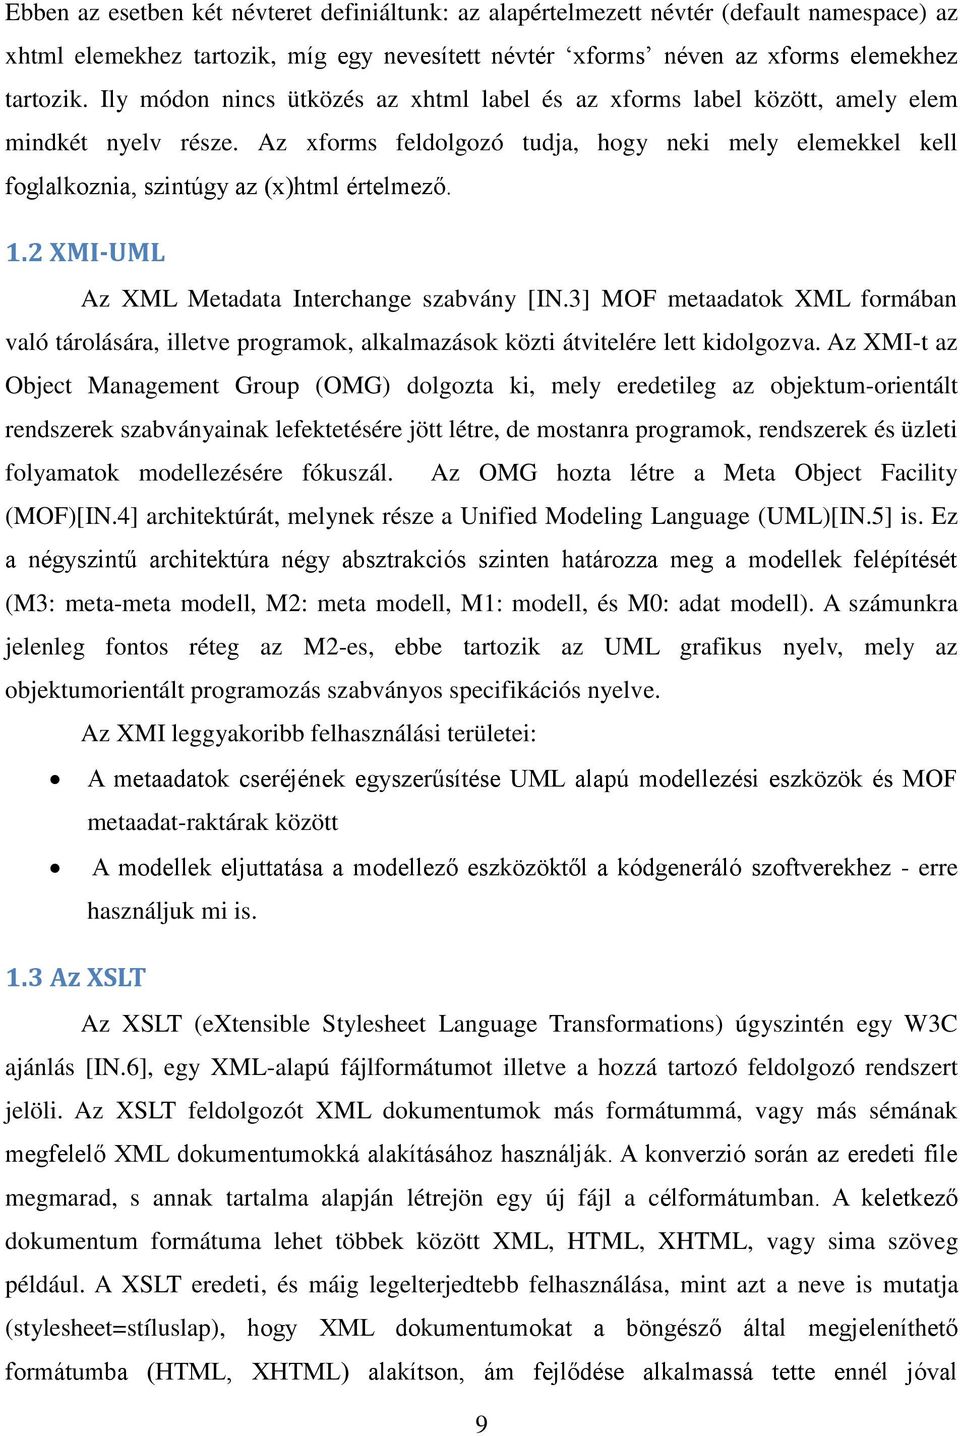 1.2 XMI-UML Az XML Metadata Interchange szabvány [IN.3] MOF metaadatok XML formában való tárolására, illetve programok, alkalmazások közti átvitelére lett kidolgozva.